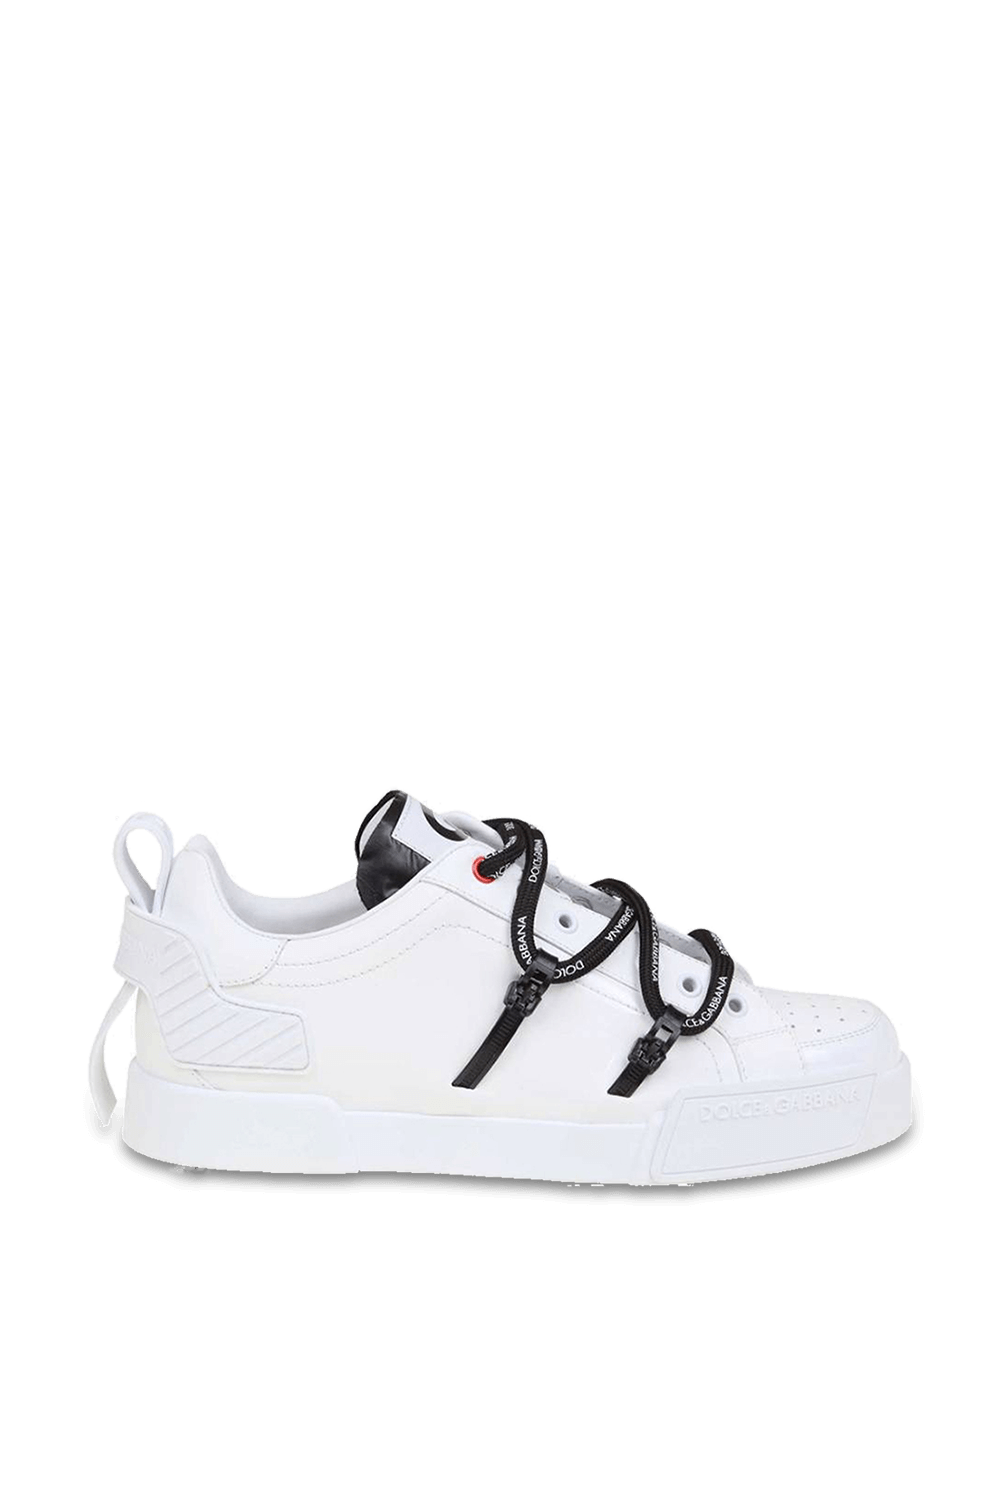 Portofino Lace Up Sneakers in White DOLCE & GABBANA